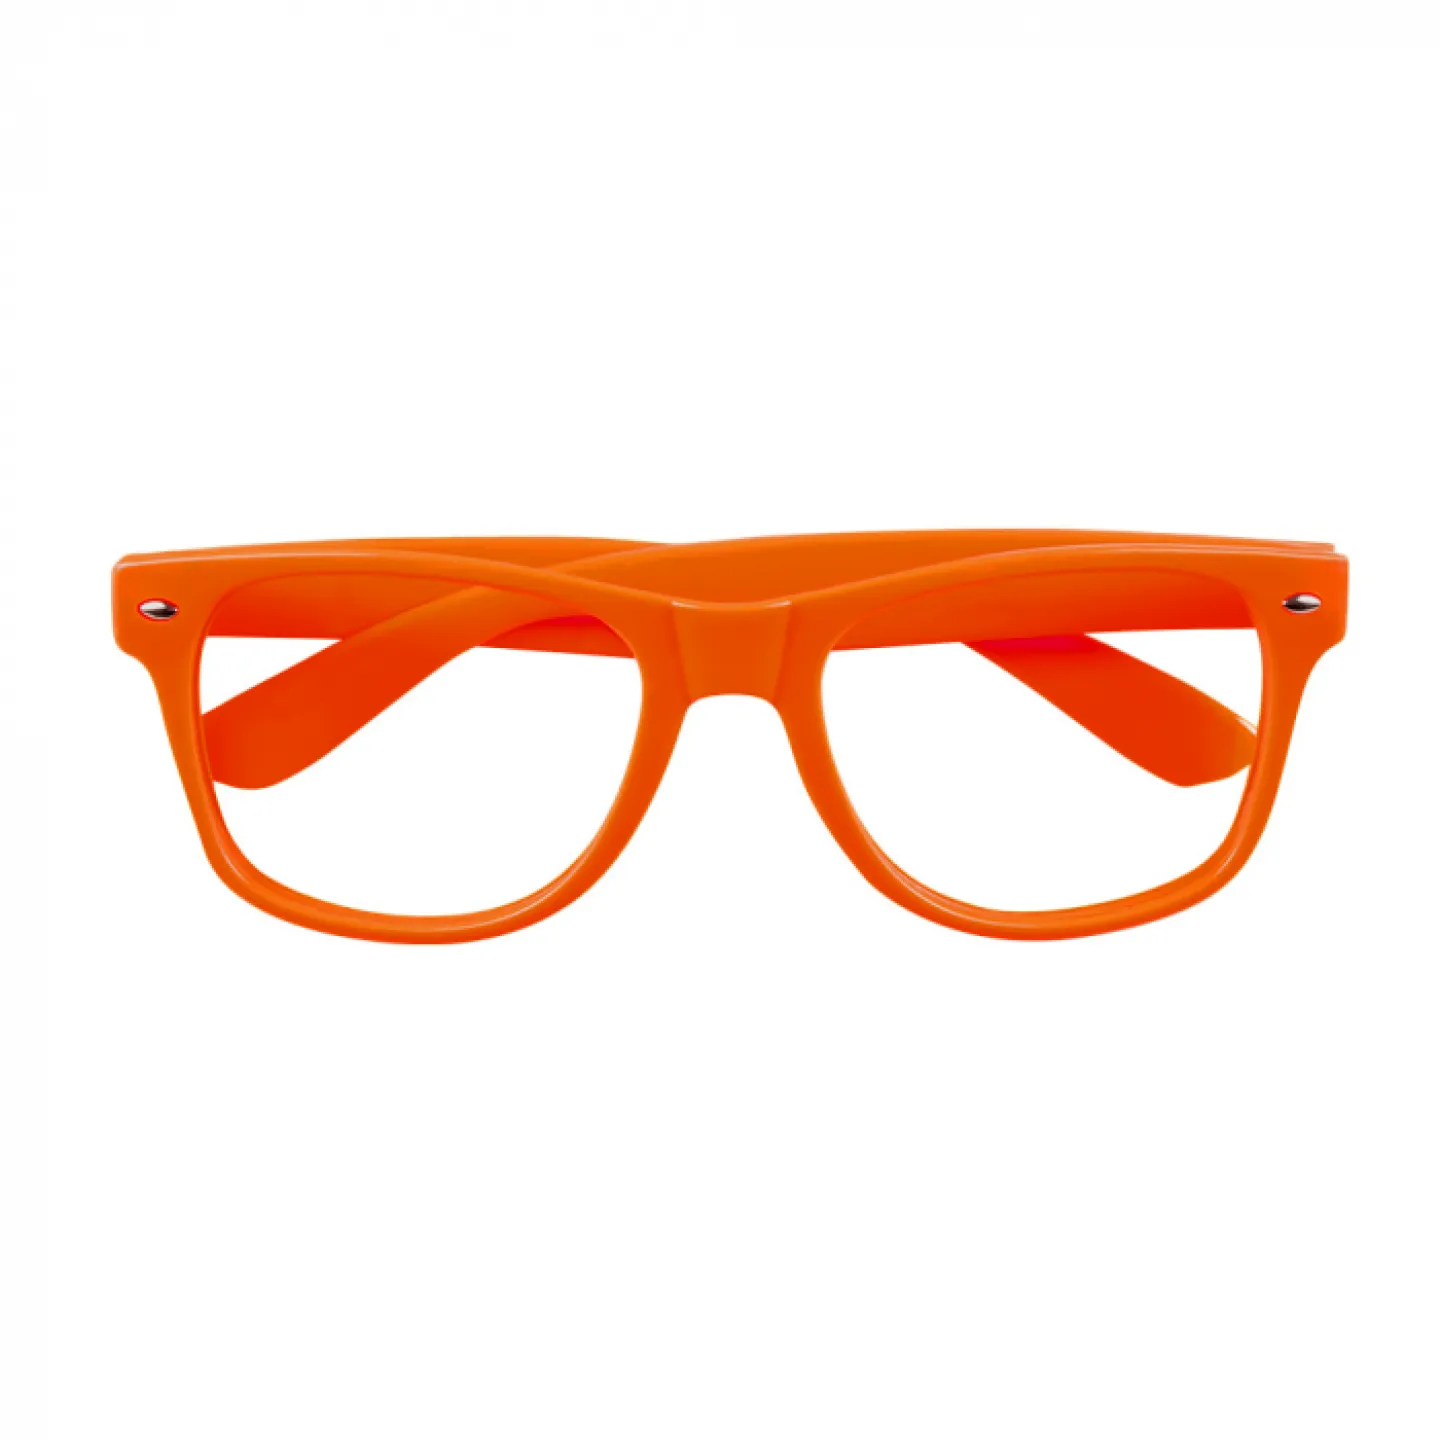 Bril zonder glazen - Oranje.